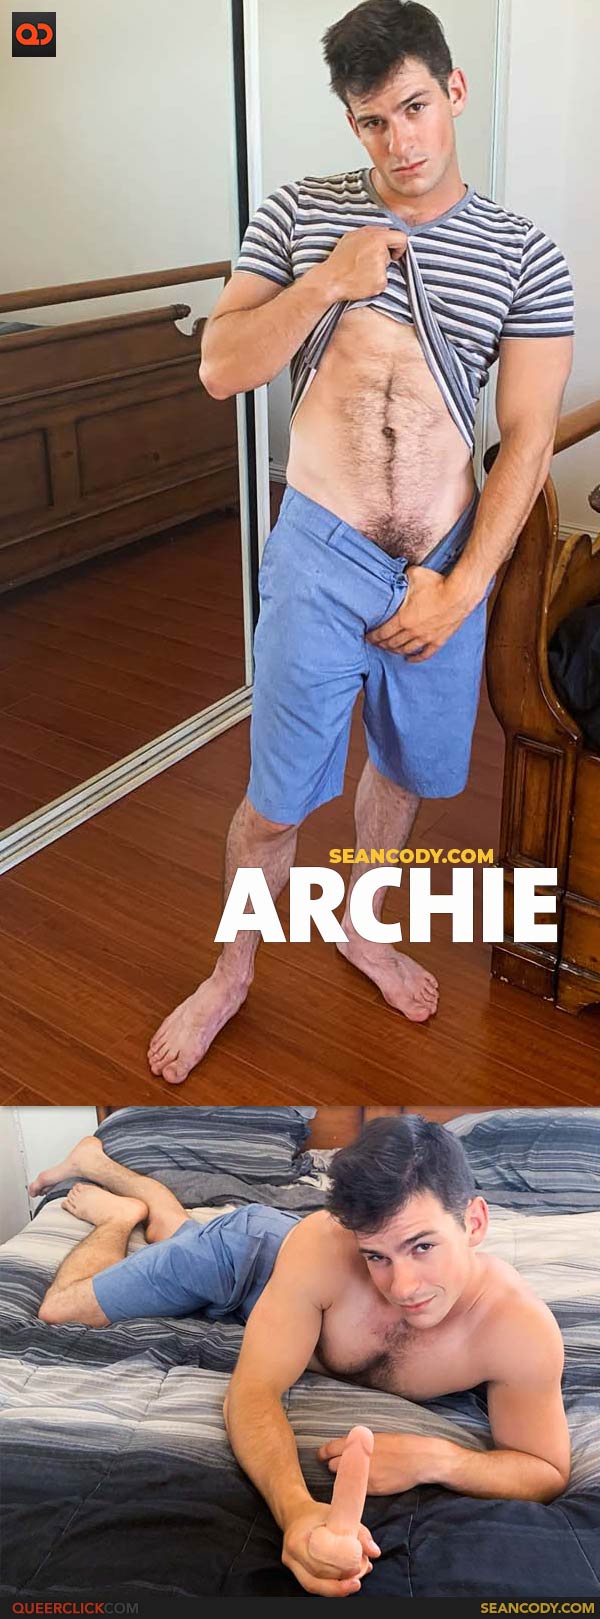 Sean Cody: Archie - Solo